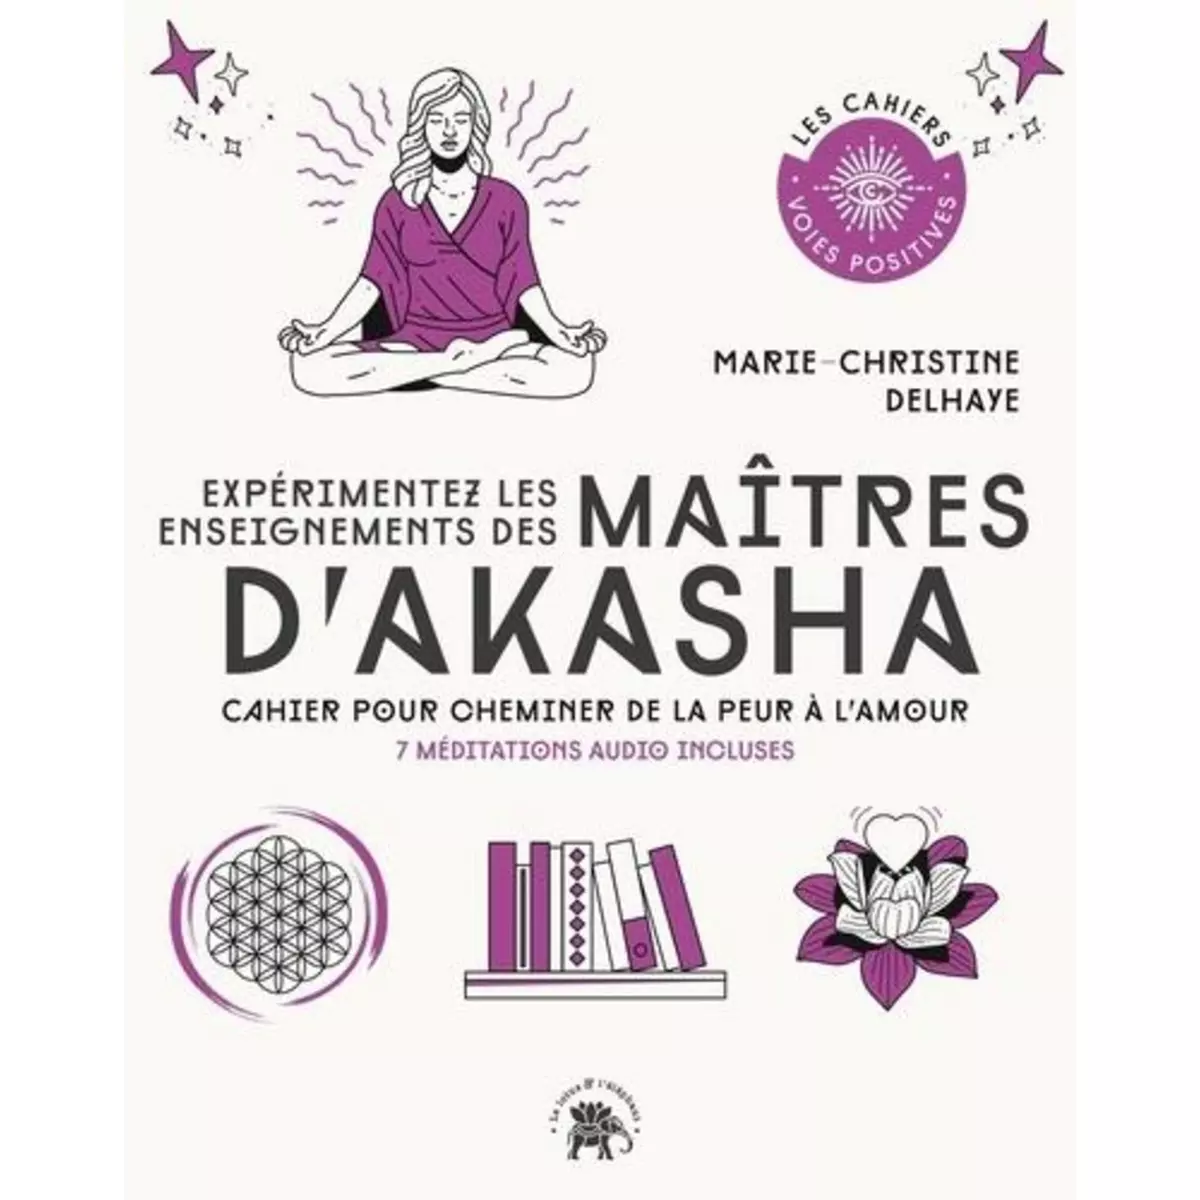  EXPERIMENTEZ LES ENSEIGNEMENTS DES MAITRES D'AKASHA. CAHIER POUR CHEMINER DE LA PEUR A L'AMOUR. 7 MEDITATIONS AUDIO INCLUSES, Delhaye Marie-Christine